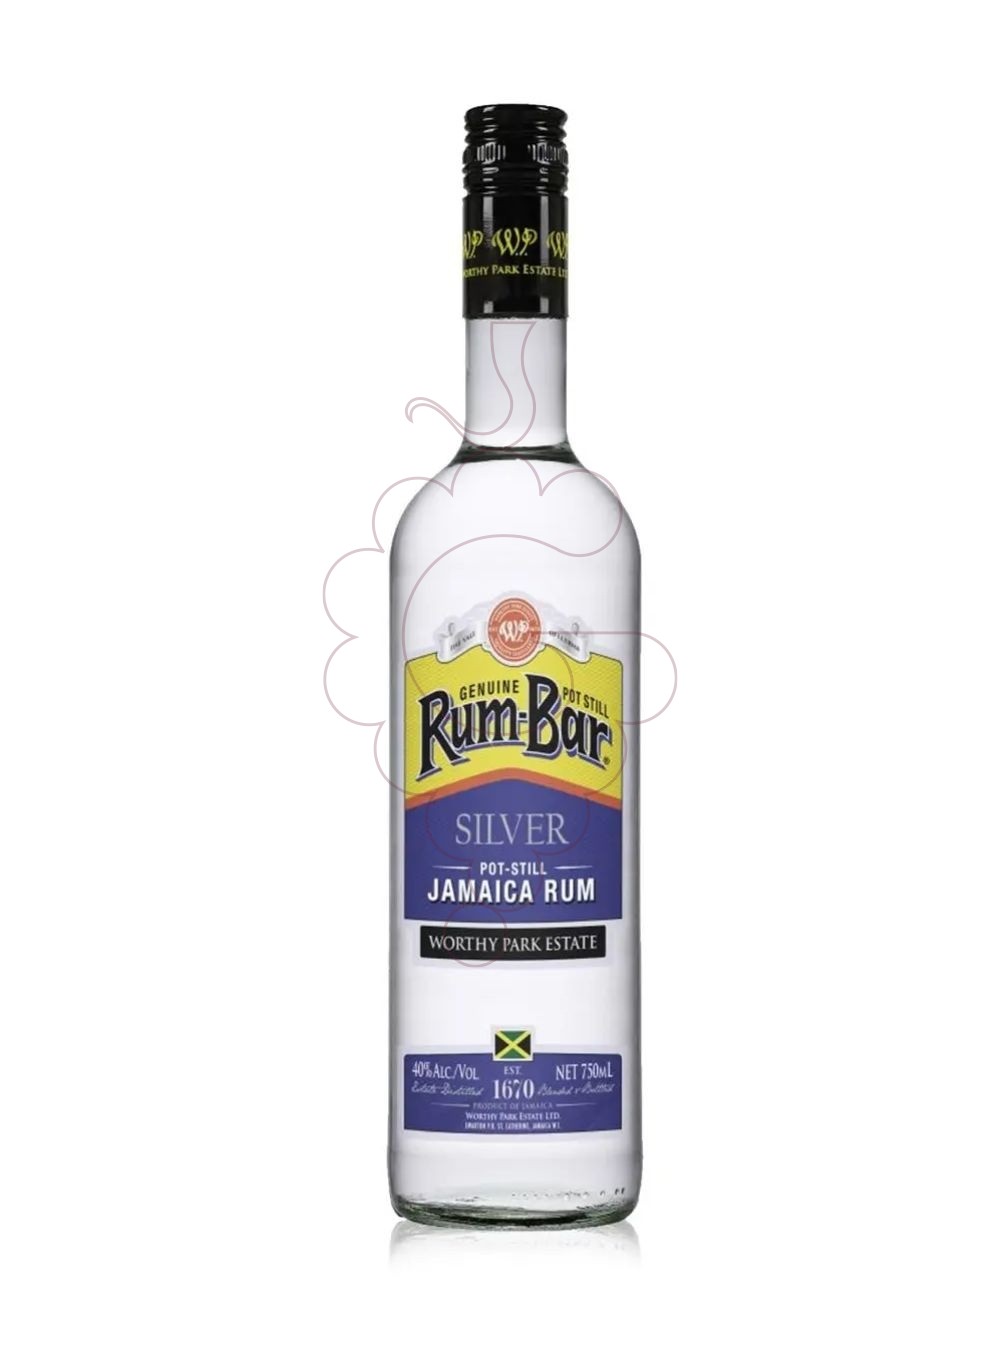 Foto Ron Rum bar silver jamaica rum 70c